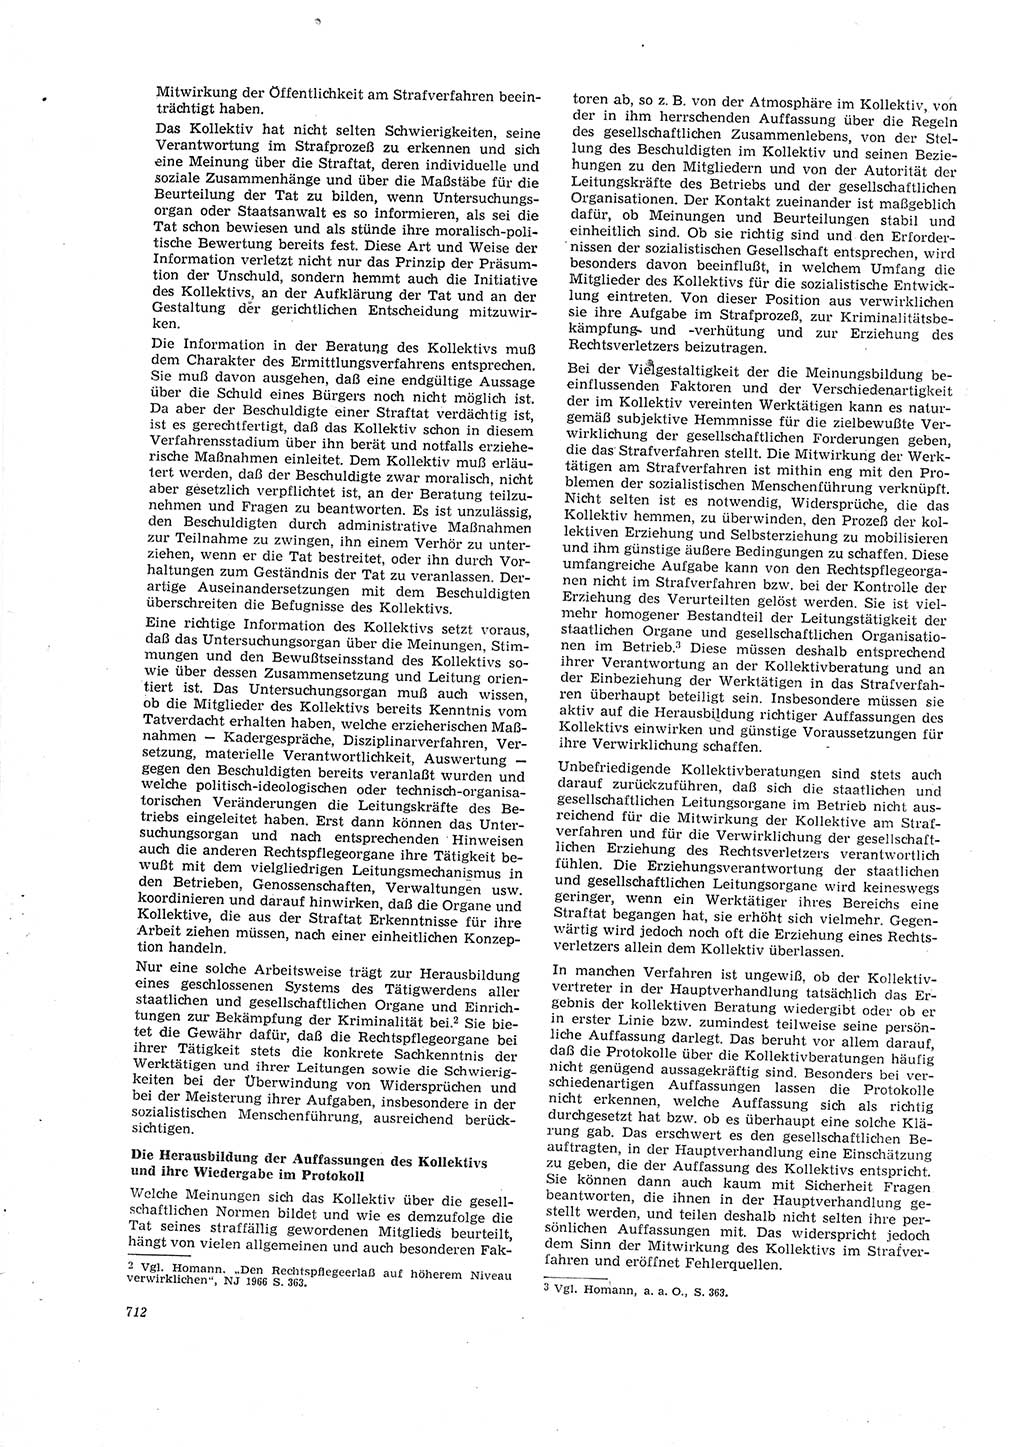 Neue Justiz (NJ), Zeitschrift für Recht und Rechtswissenschaft [Deutsche Demokratische Republik (DDR)], 20. Jahrgang 1966, Seite 712 (NJ DDR 1966, S. 712)